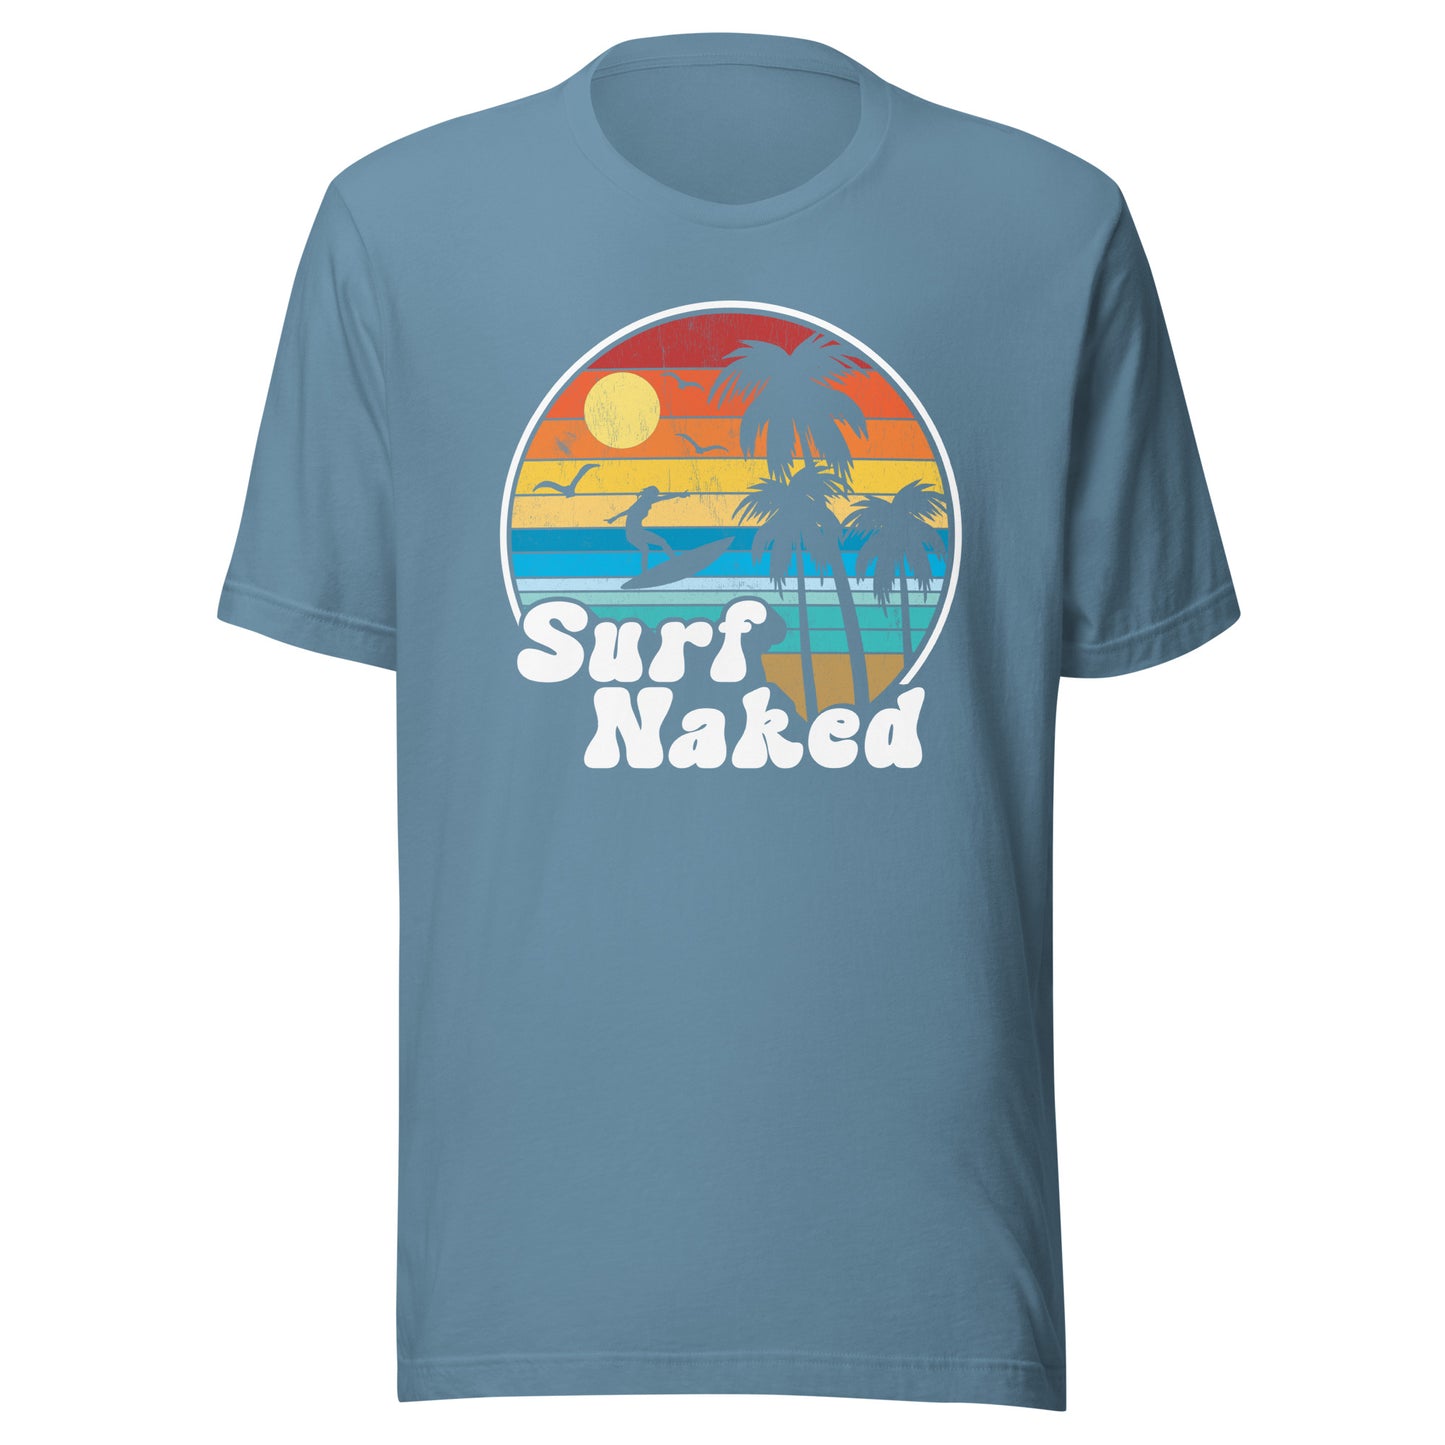 Surf Naked Sunset Beach Tee